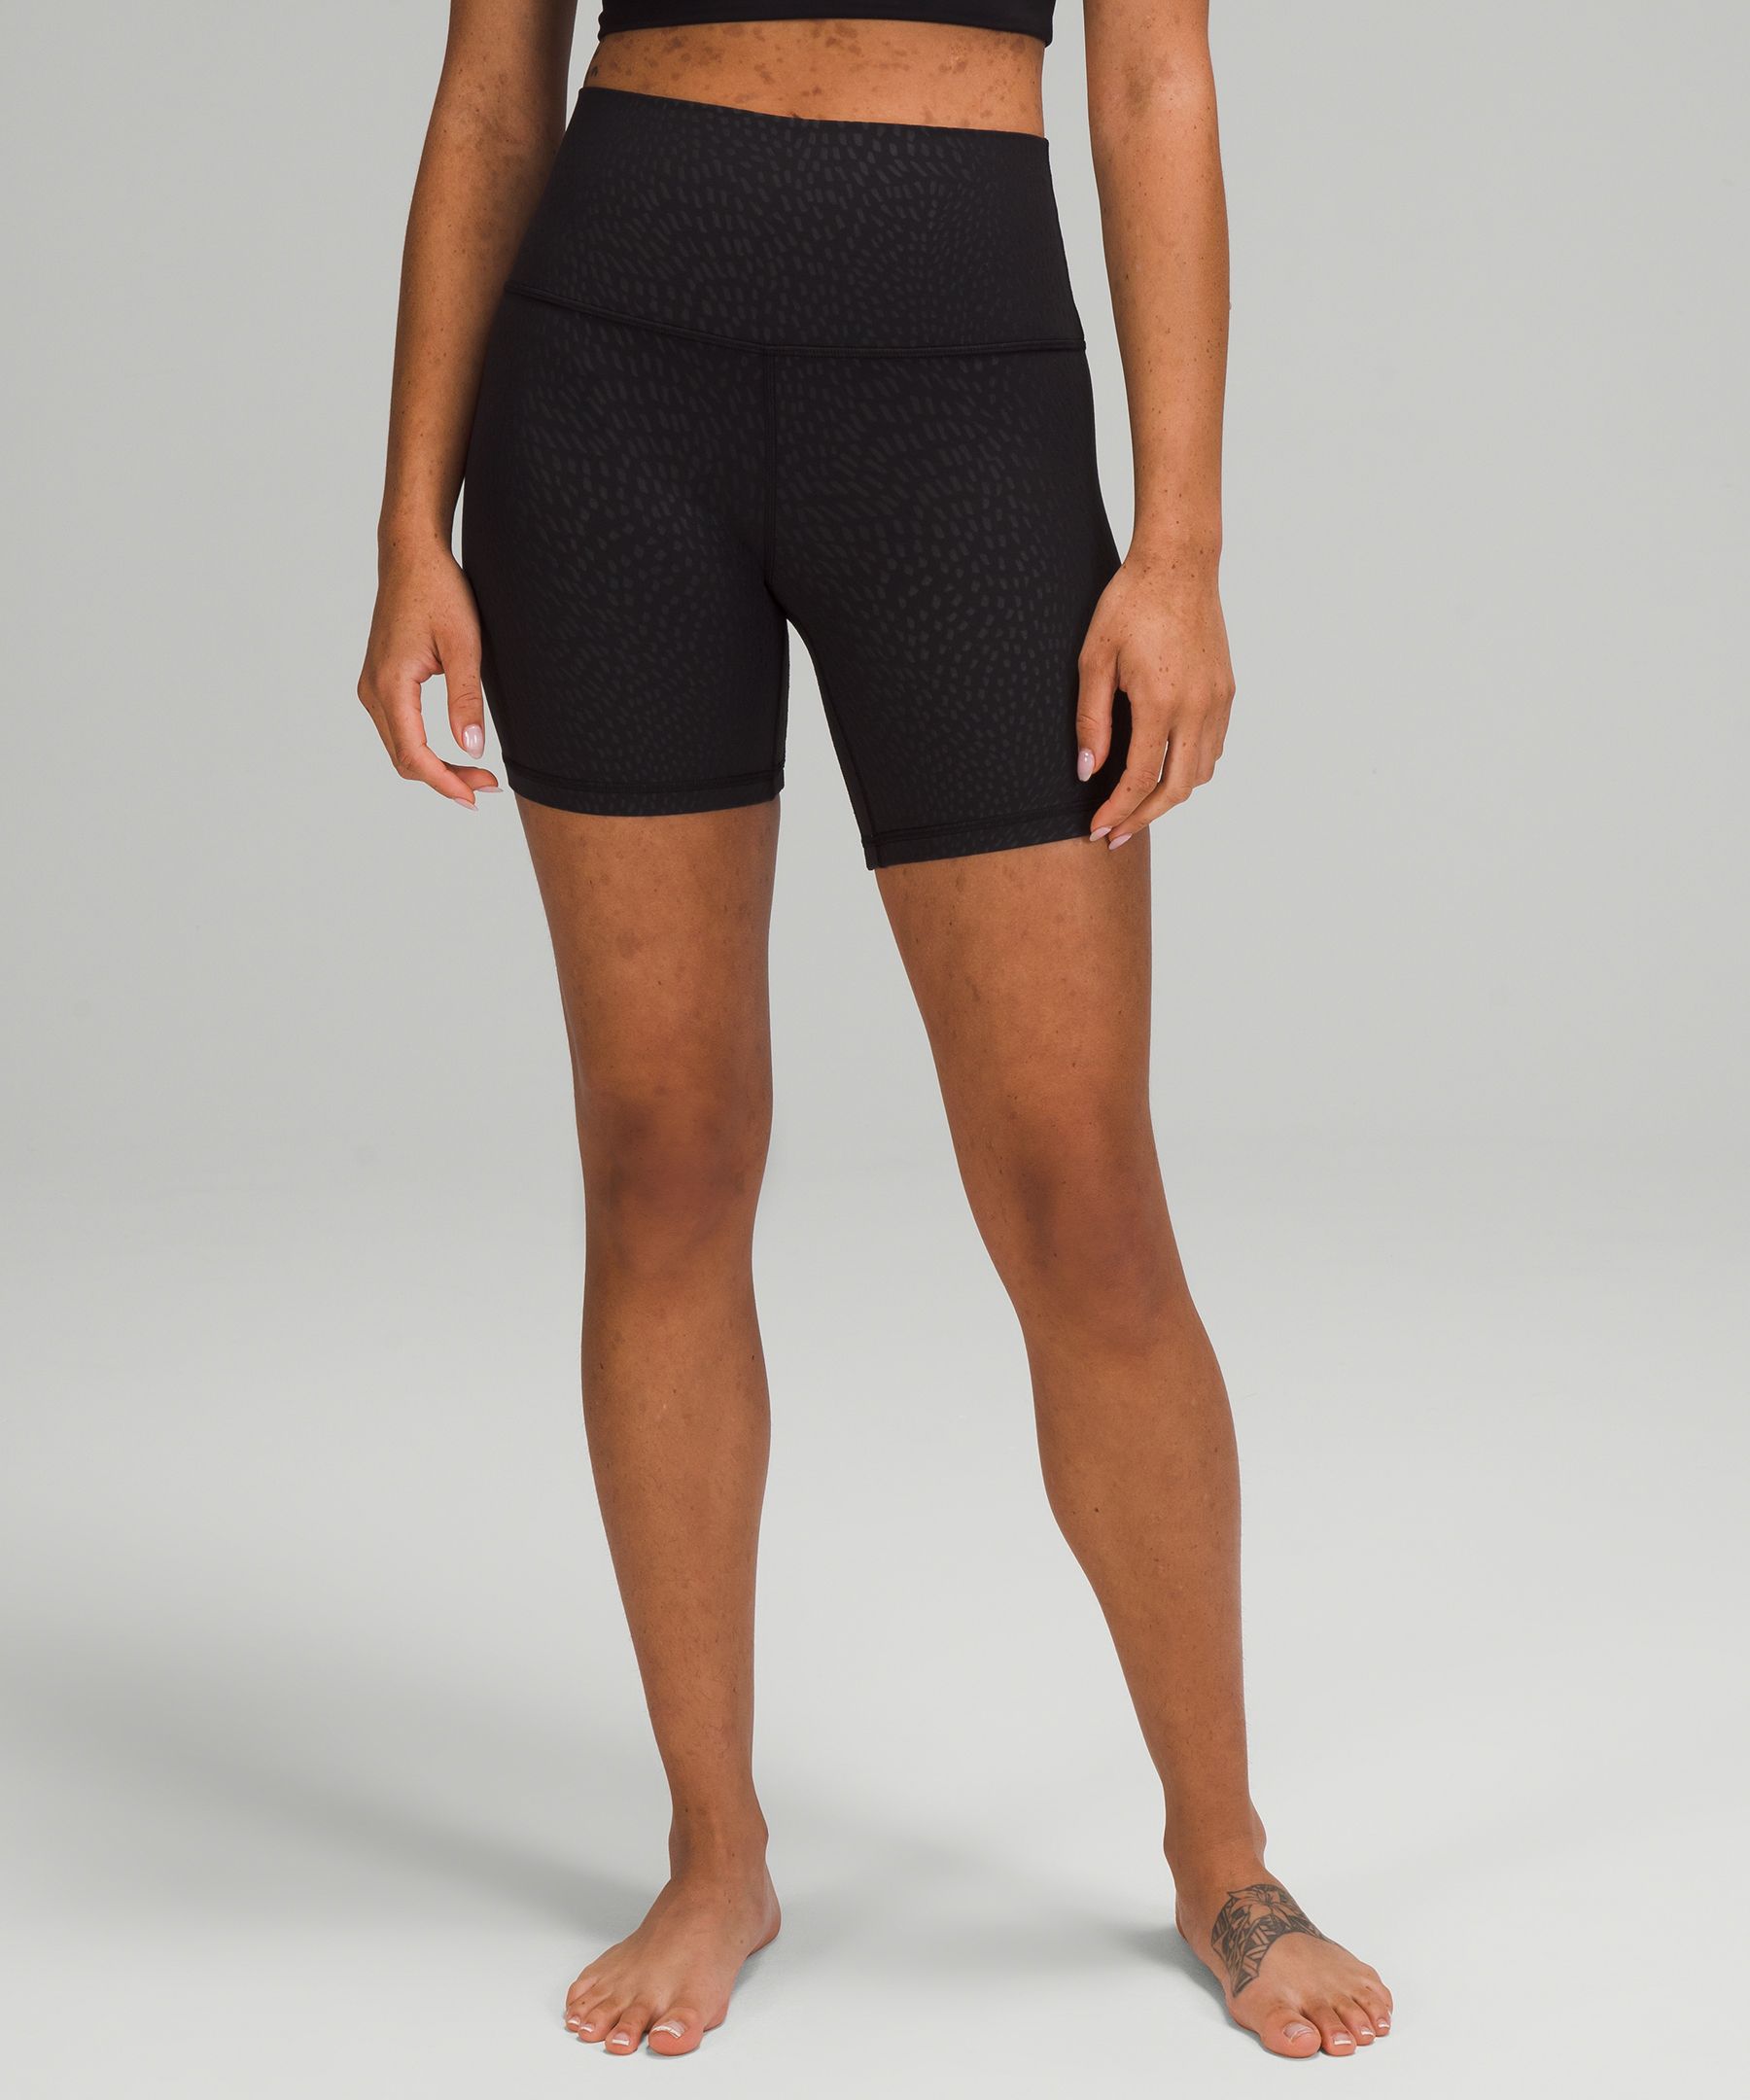 Lululemon Align™ High-rise Shorts 6" In Jewel Emboss Black